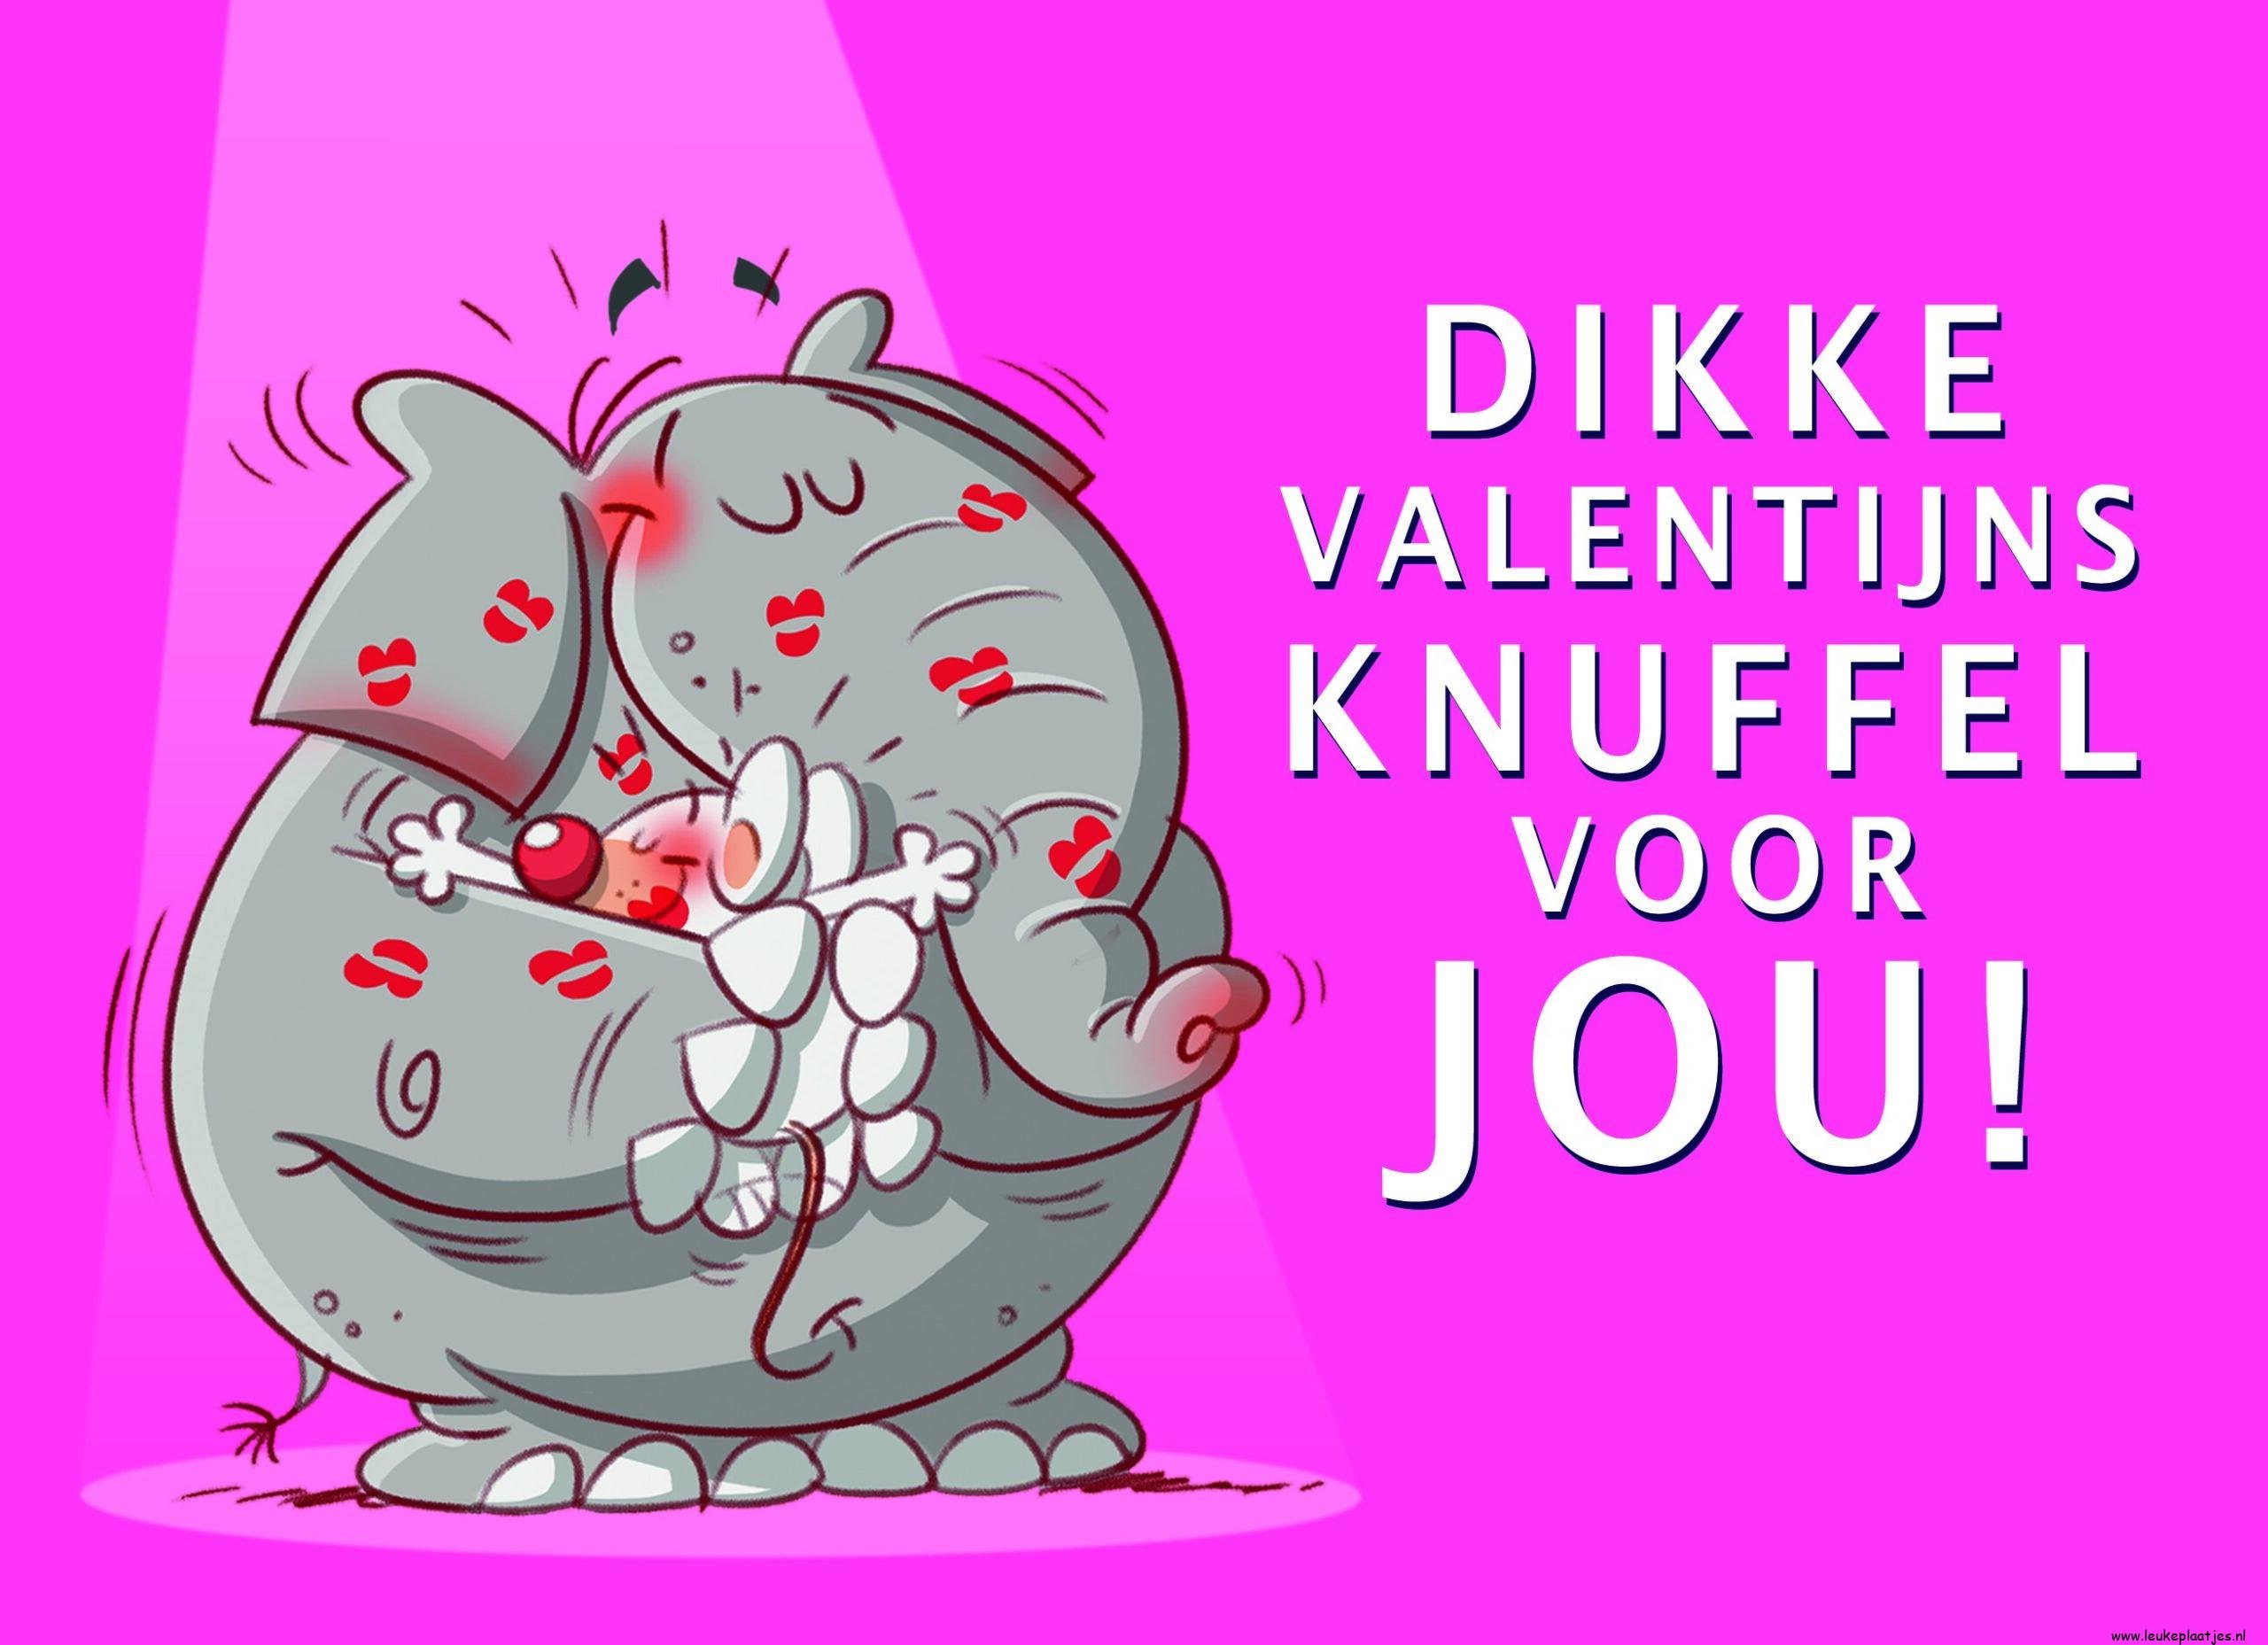 ᐅ valentijn humor tekst - Valentijnsdag plaatjes